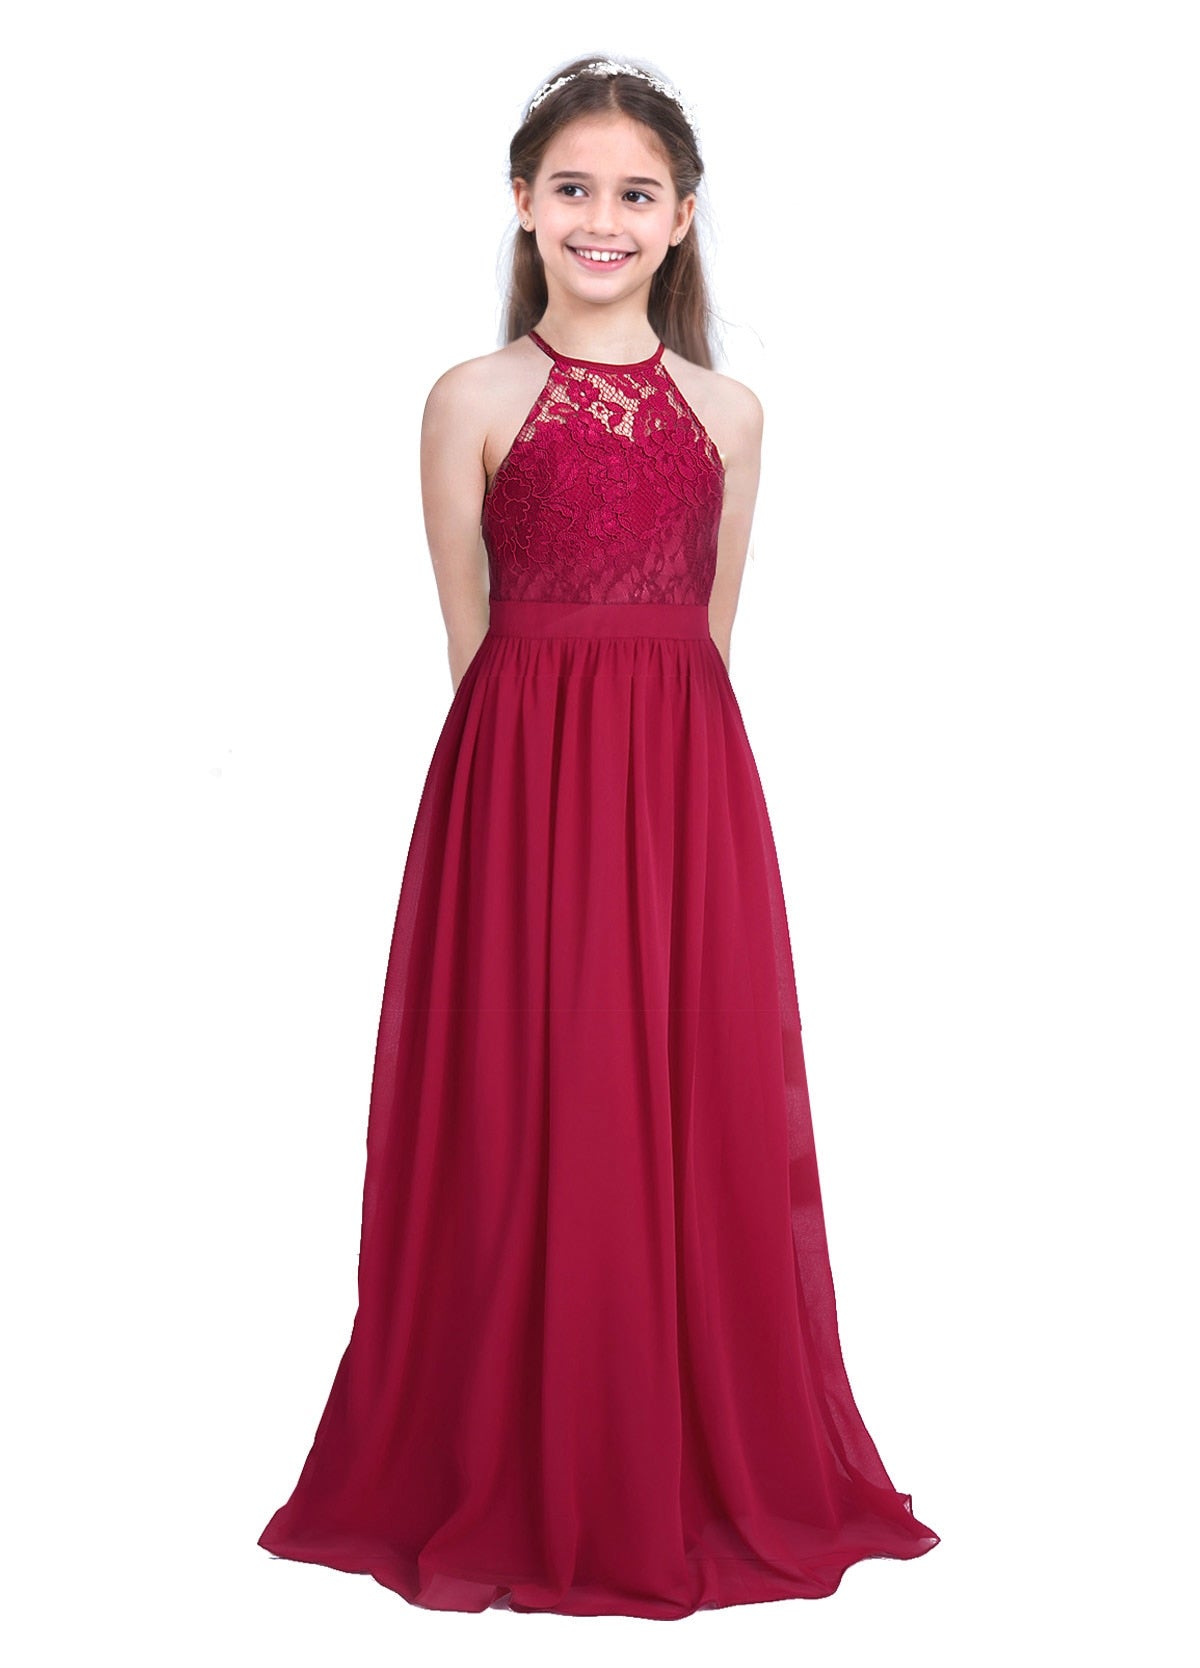 Elegant A-Line Halter Neck Floral Lace Dress